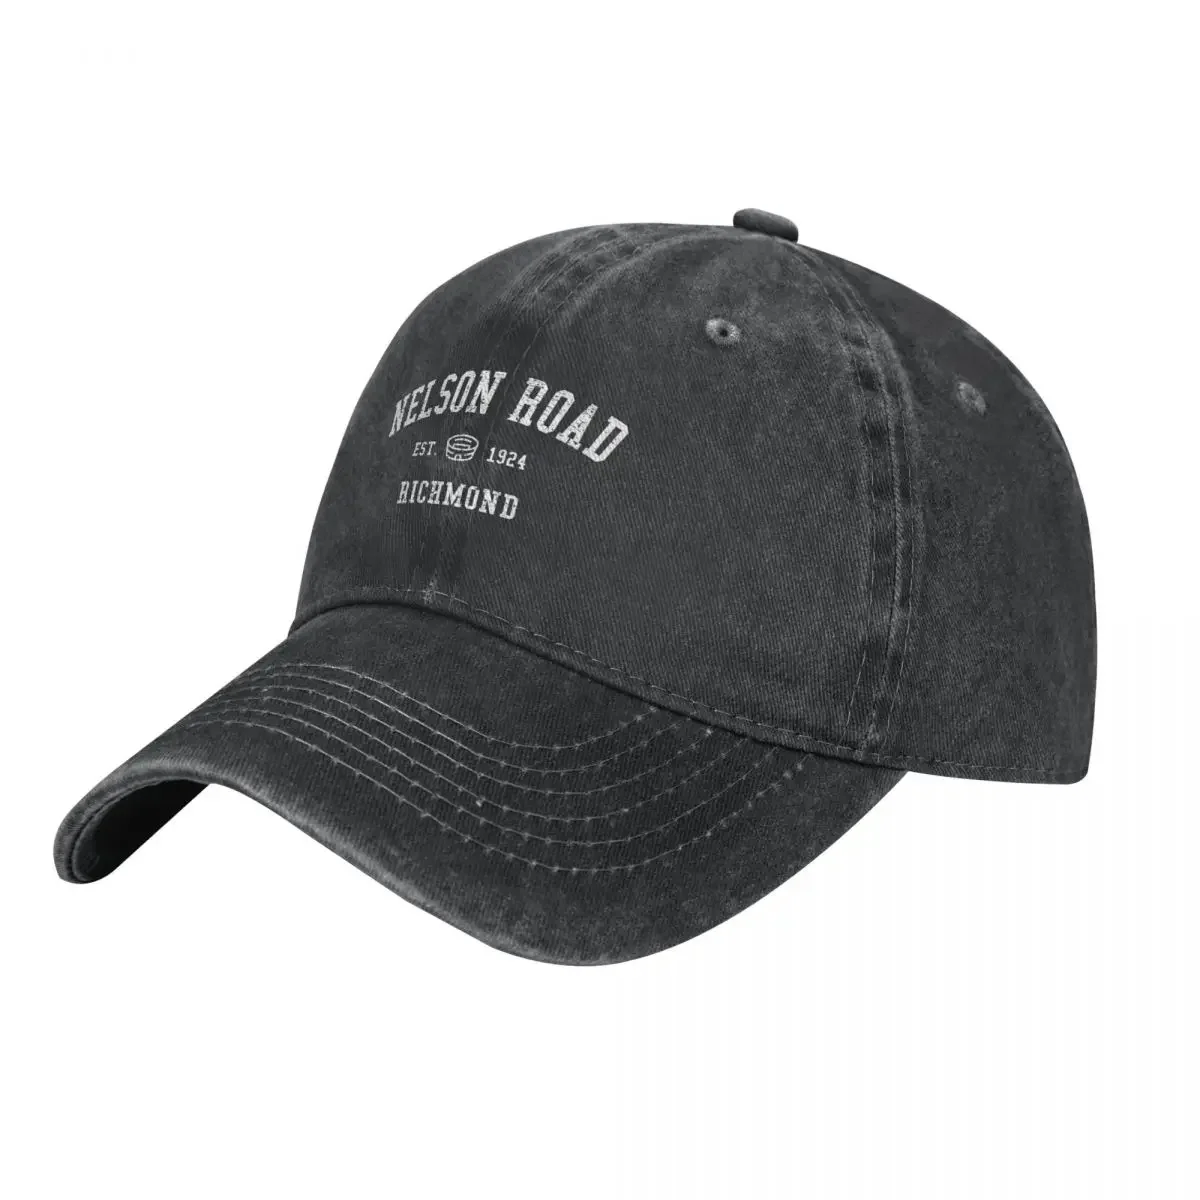 

Nelson Road Funny Cowboy Hat Trucker Hat Luxury Brand Hood Golf Wear Cap Male Hip Hop Summer Baseball Caps for Men Women